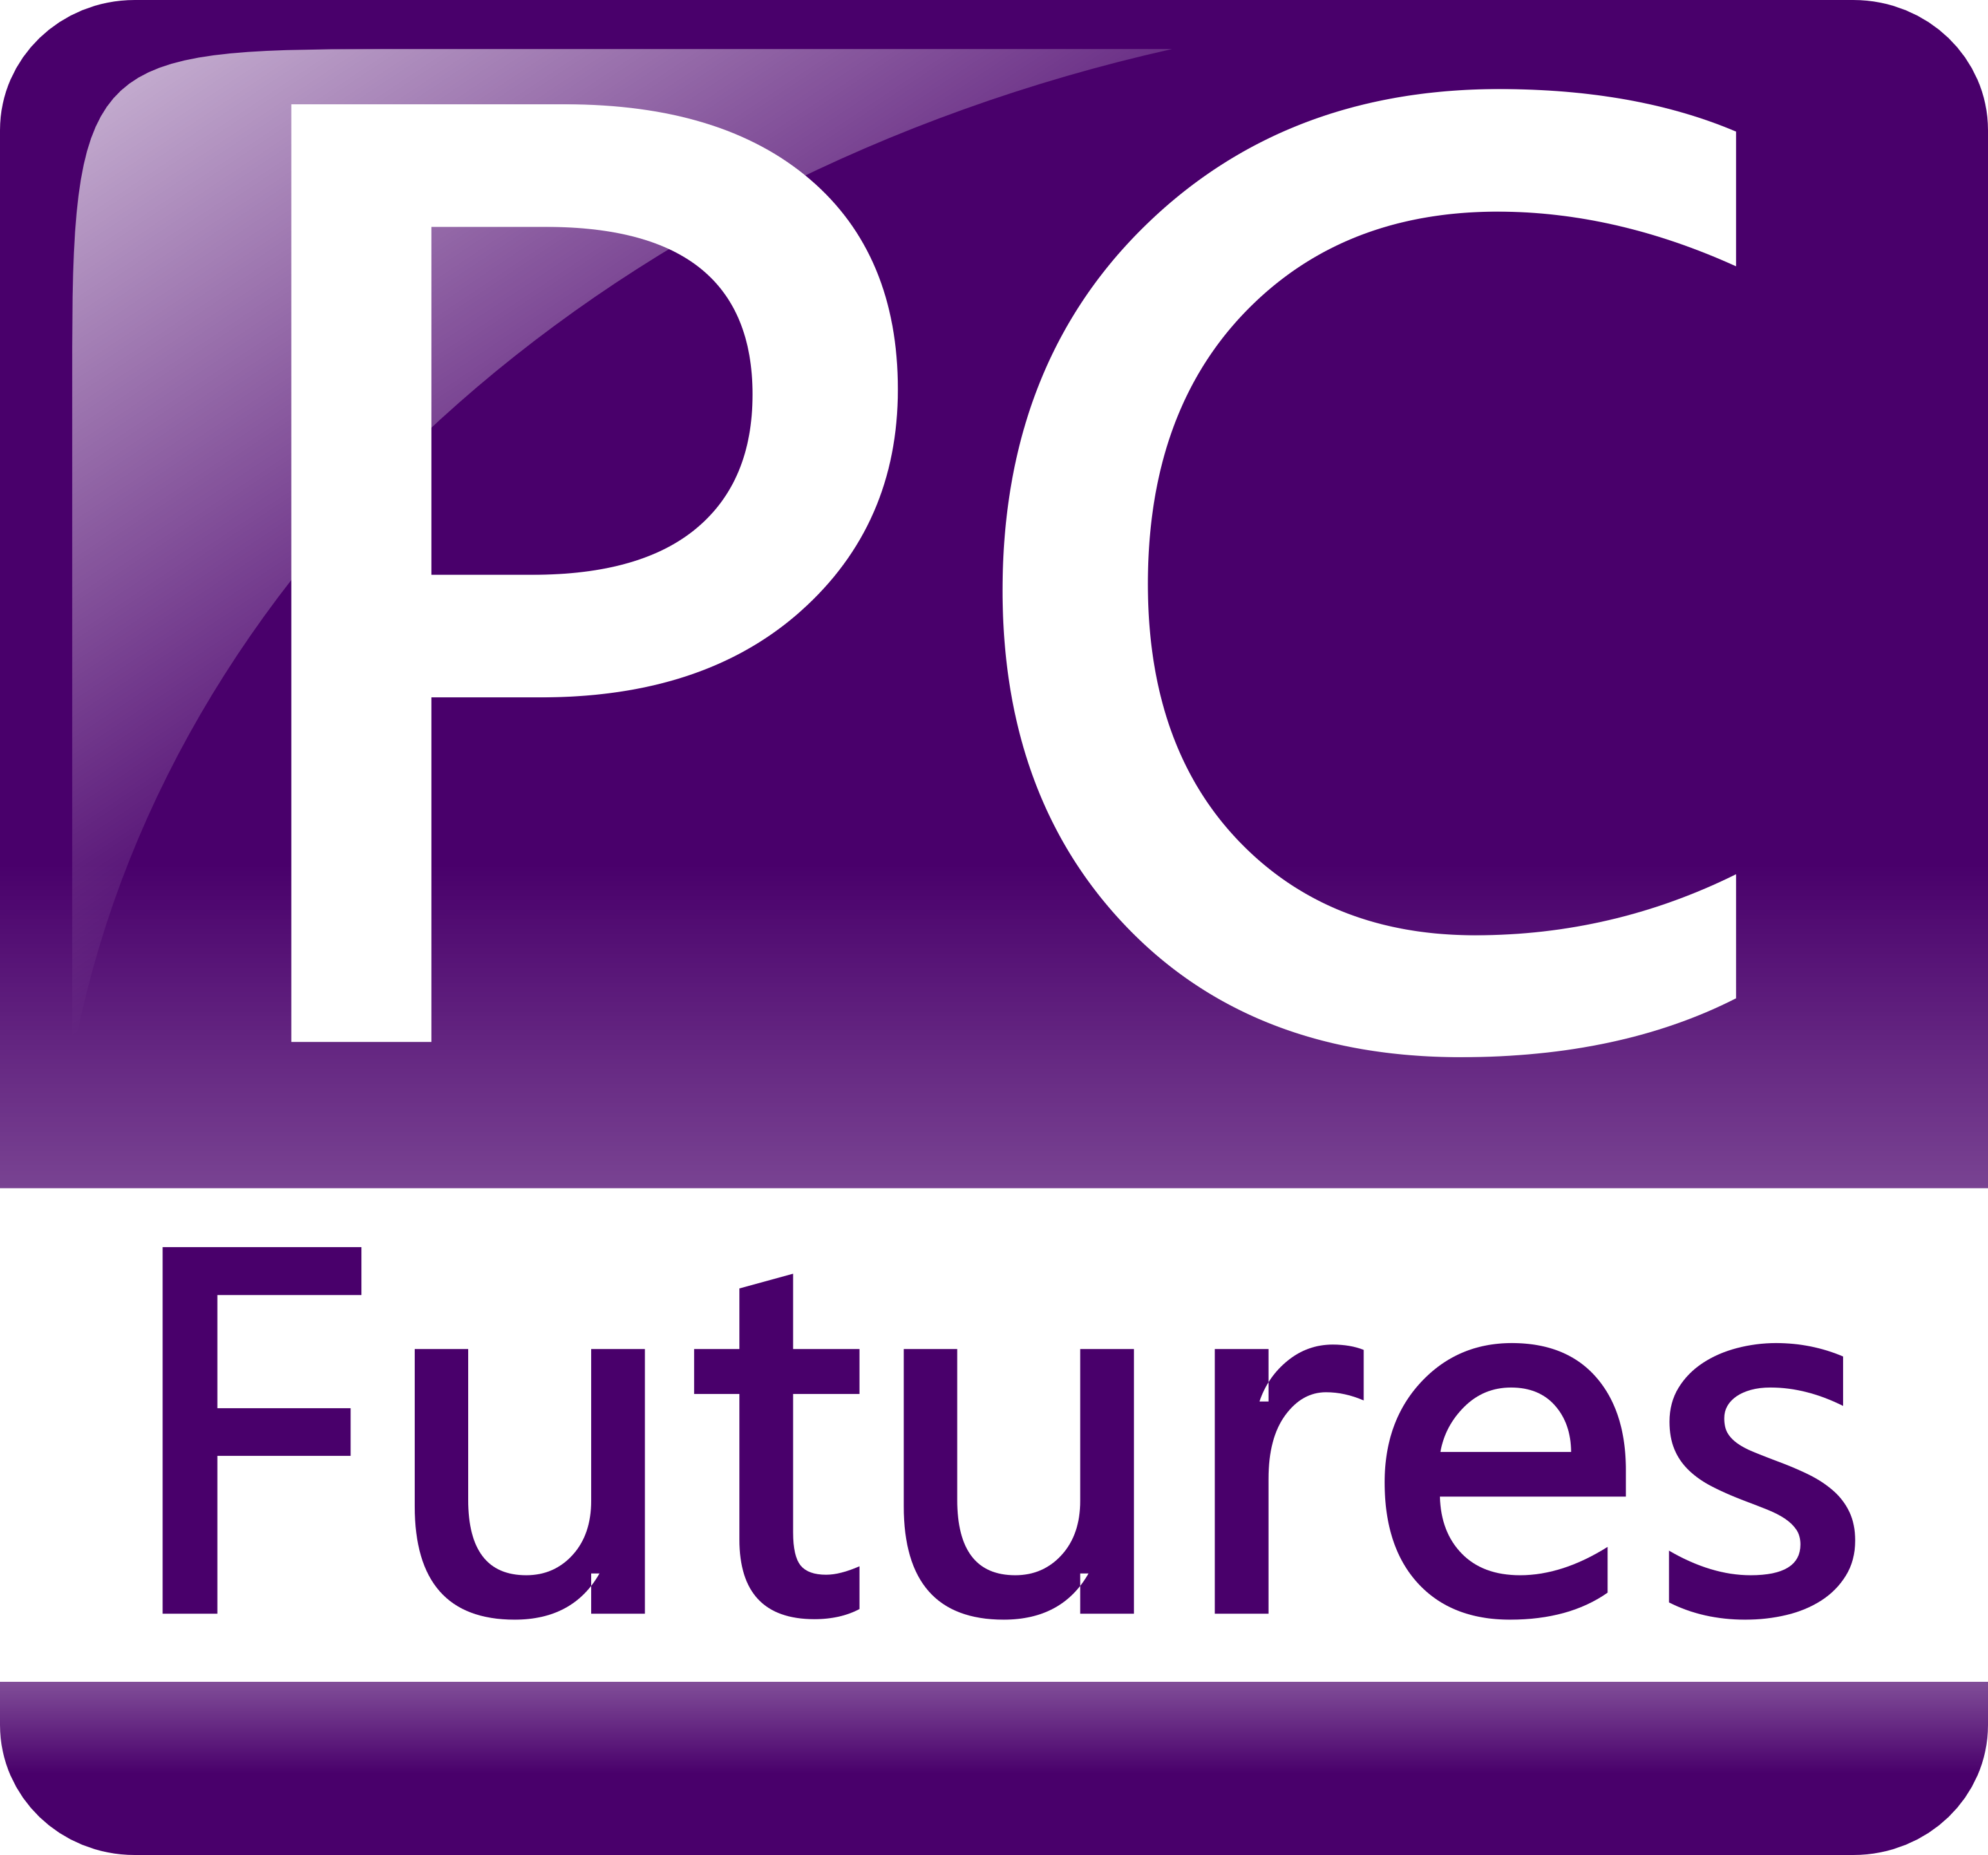 PC Futures Ltd